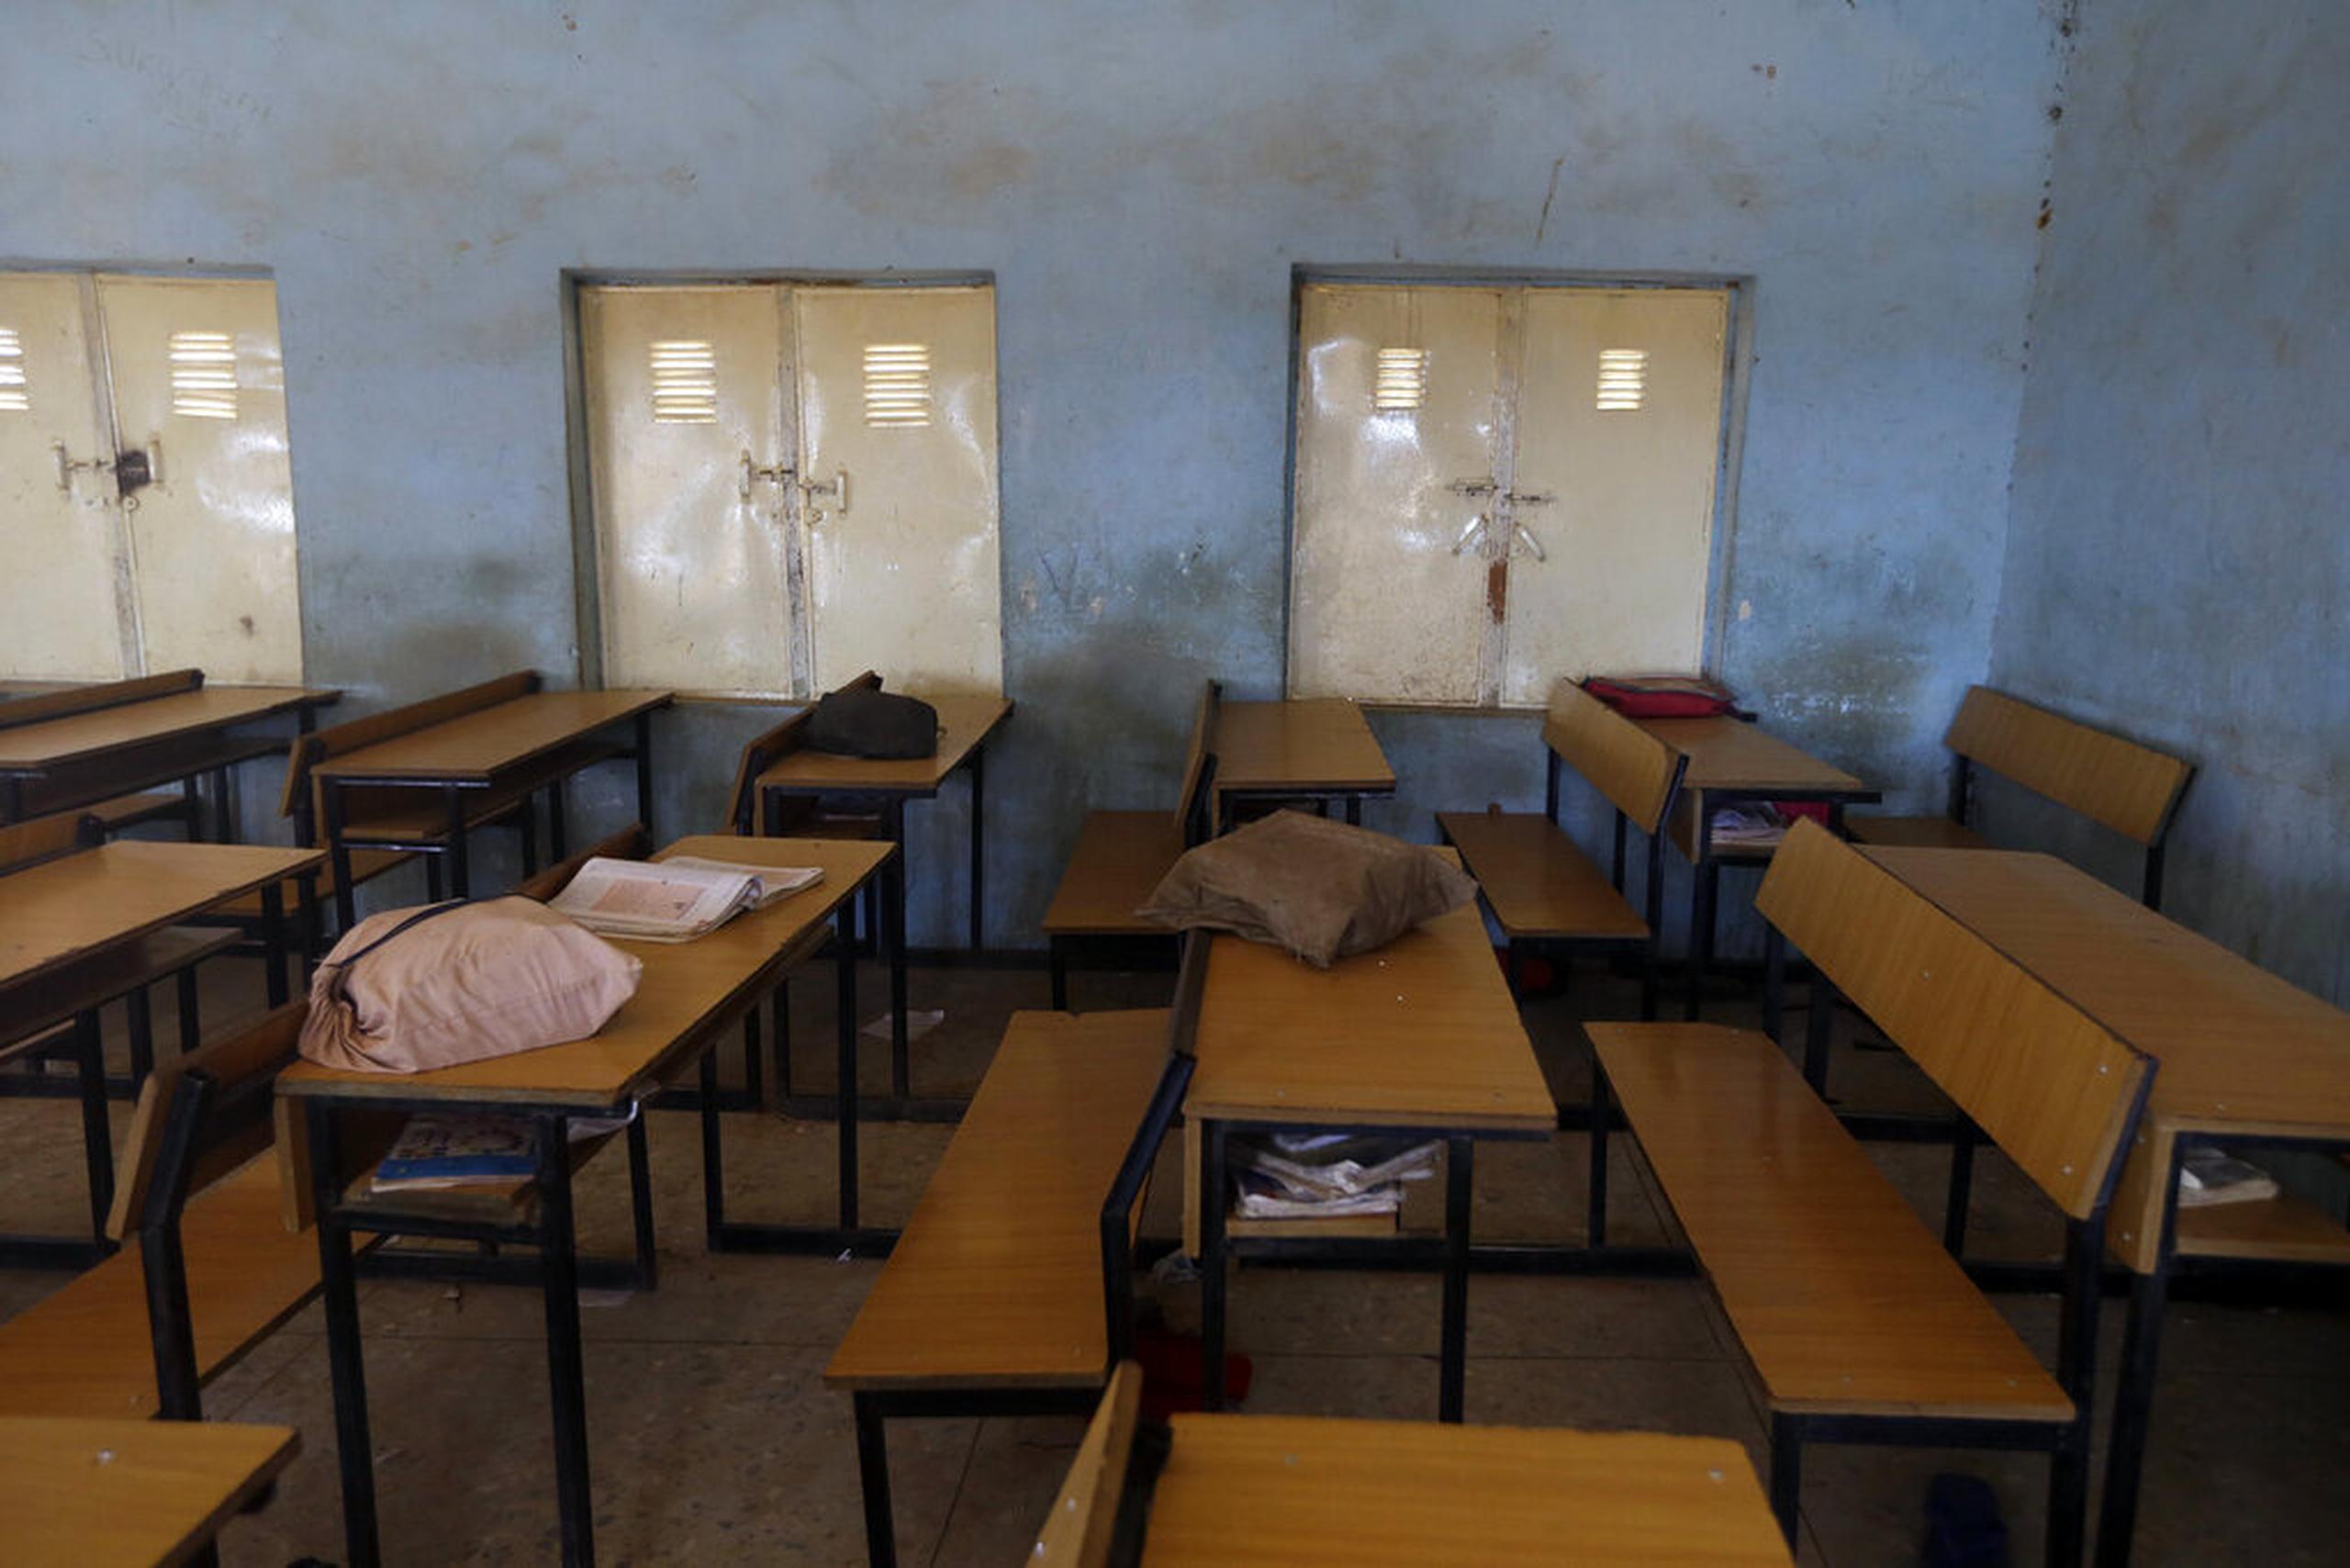 Los alumnos del Federal Government College de Kebbi fueron secuestrados el 17 de junio cuando los pistoleros irrumpieron en su escuela en Birnin-Yauri, que está a unas 136 millas de la capital estatal.